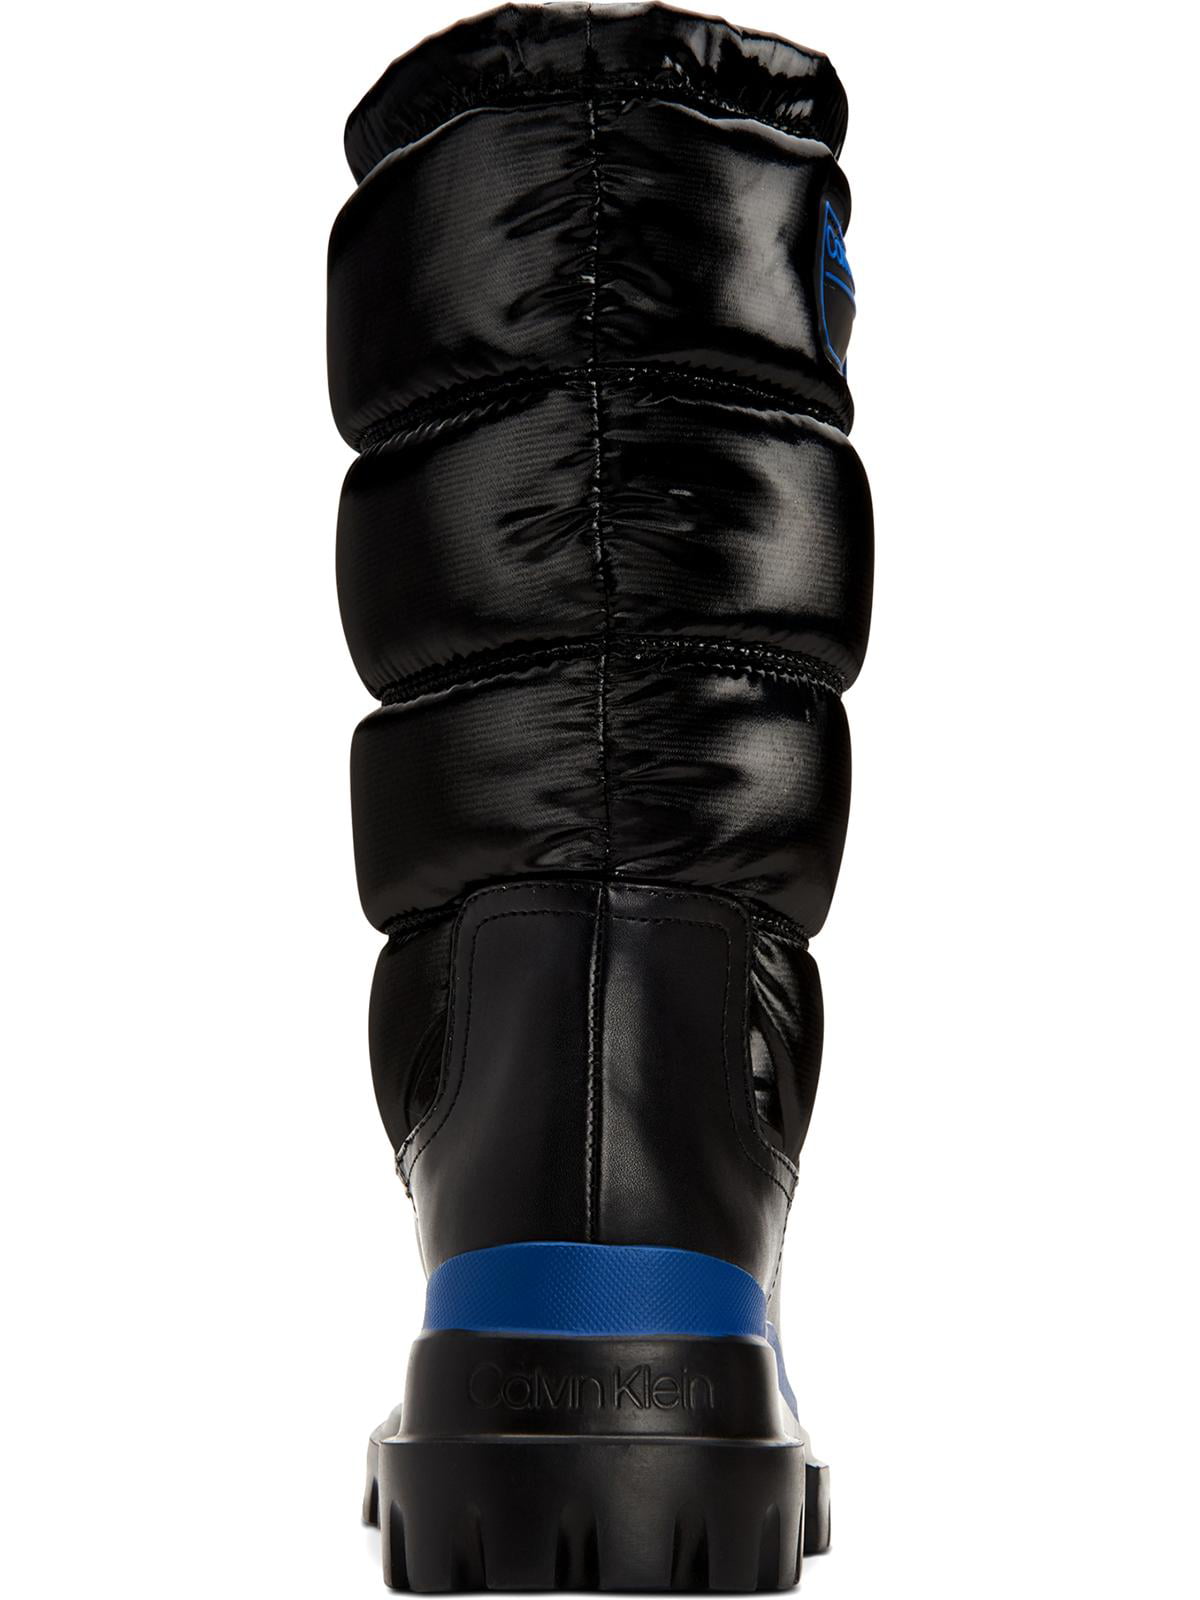 Calvin Klein Womens Laeton Puffer Winter Boots Black 10 Medium (B,M) -  